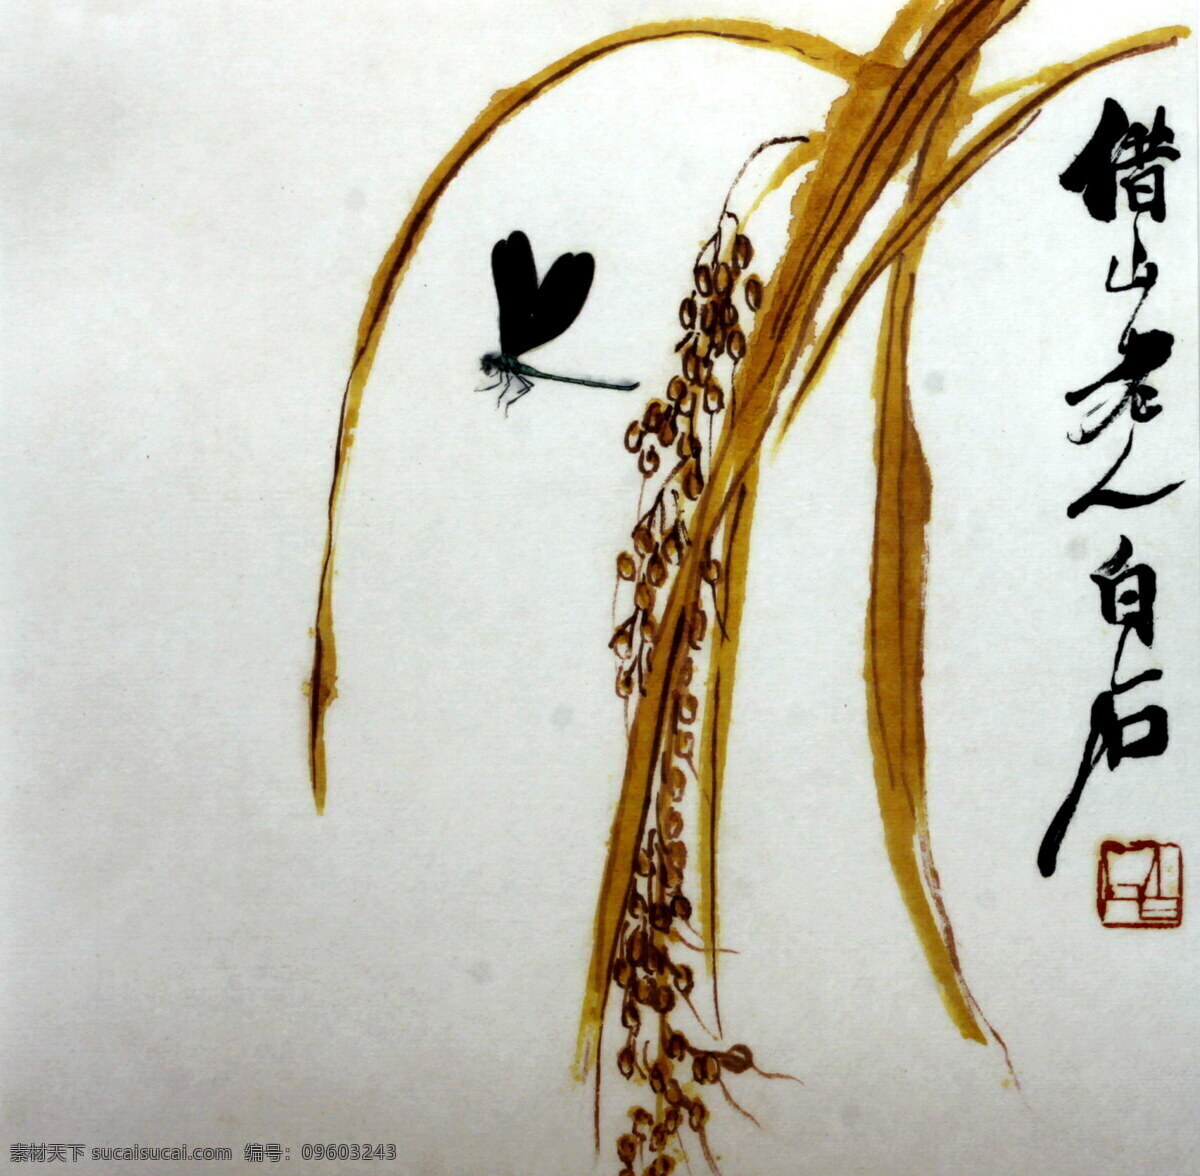 齐白石画 齐白石 画 国画 稻子 水稻 蜻蜓 艺术 文化艺术 传统文化 绘画书法